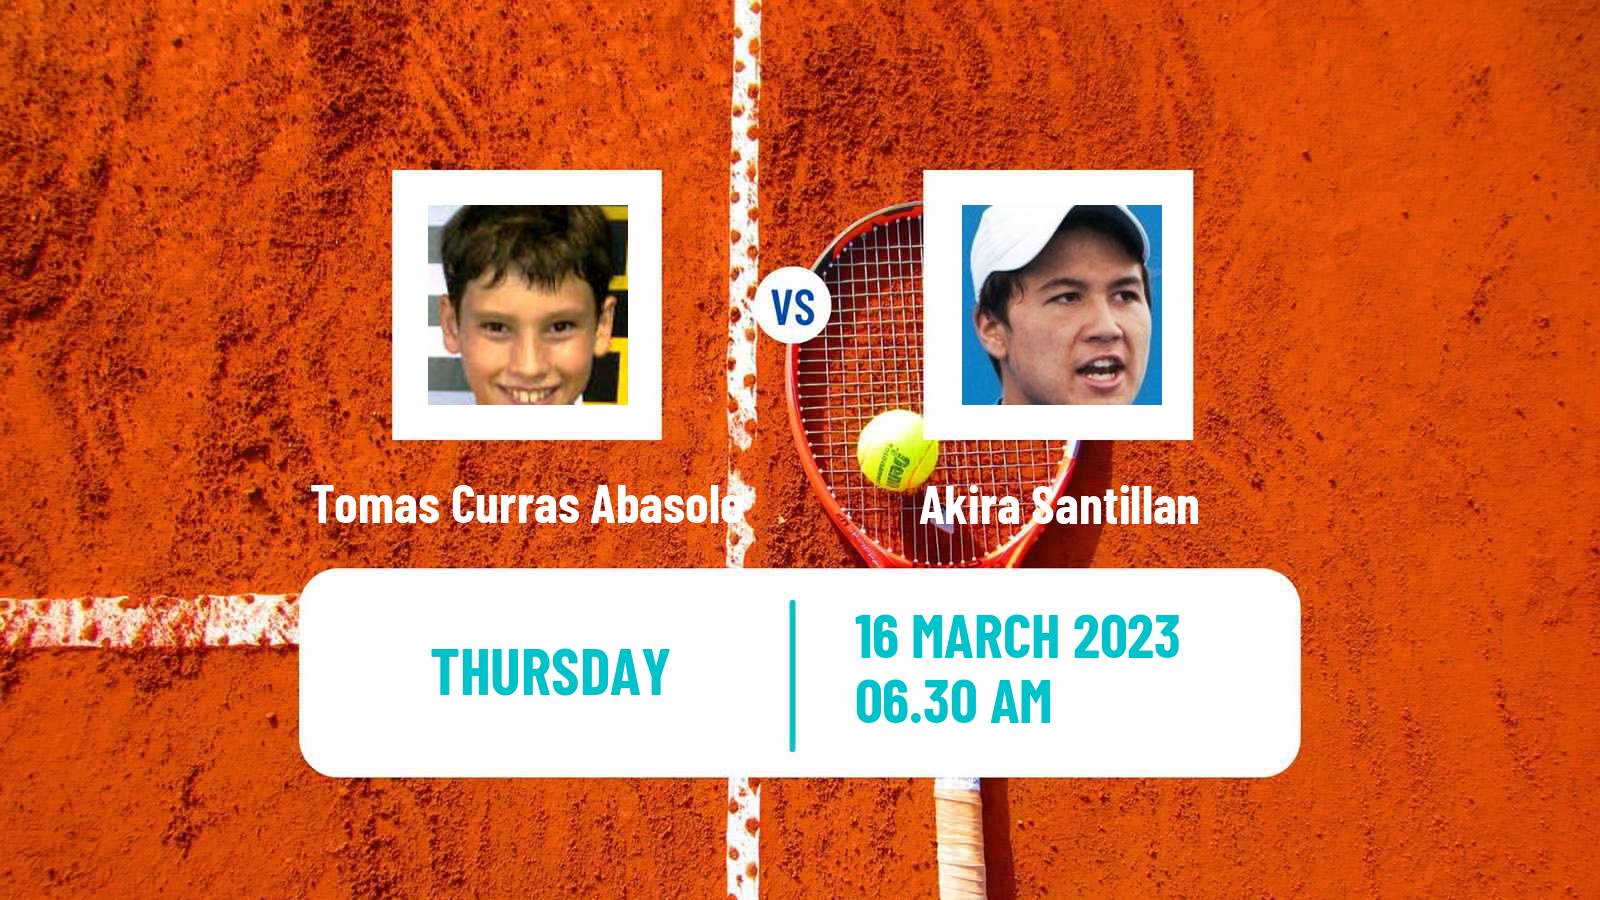 Tennis ITF Tournaments Tomas Curras Abasolo - Akira Santillan